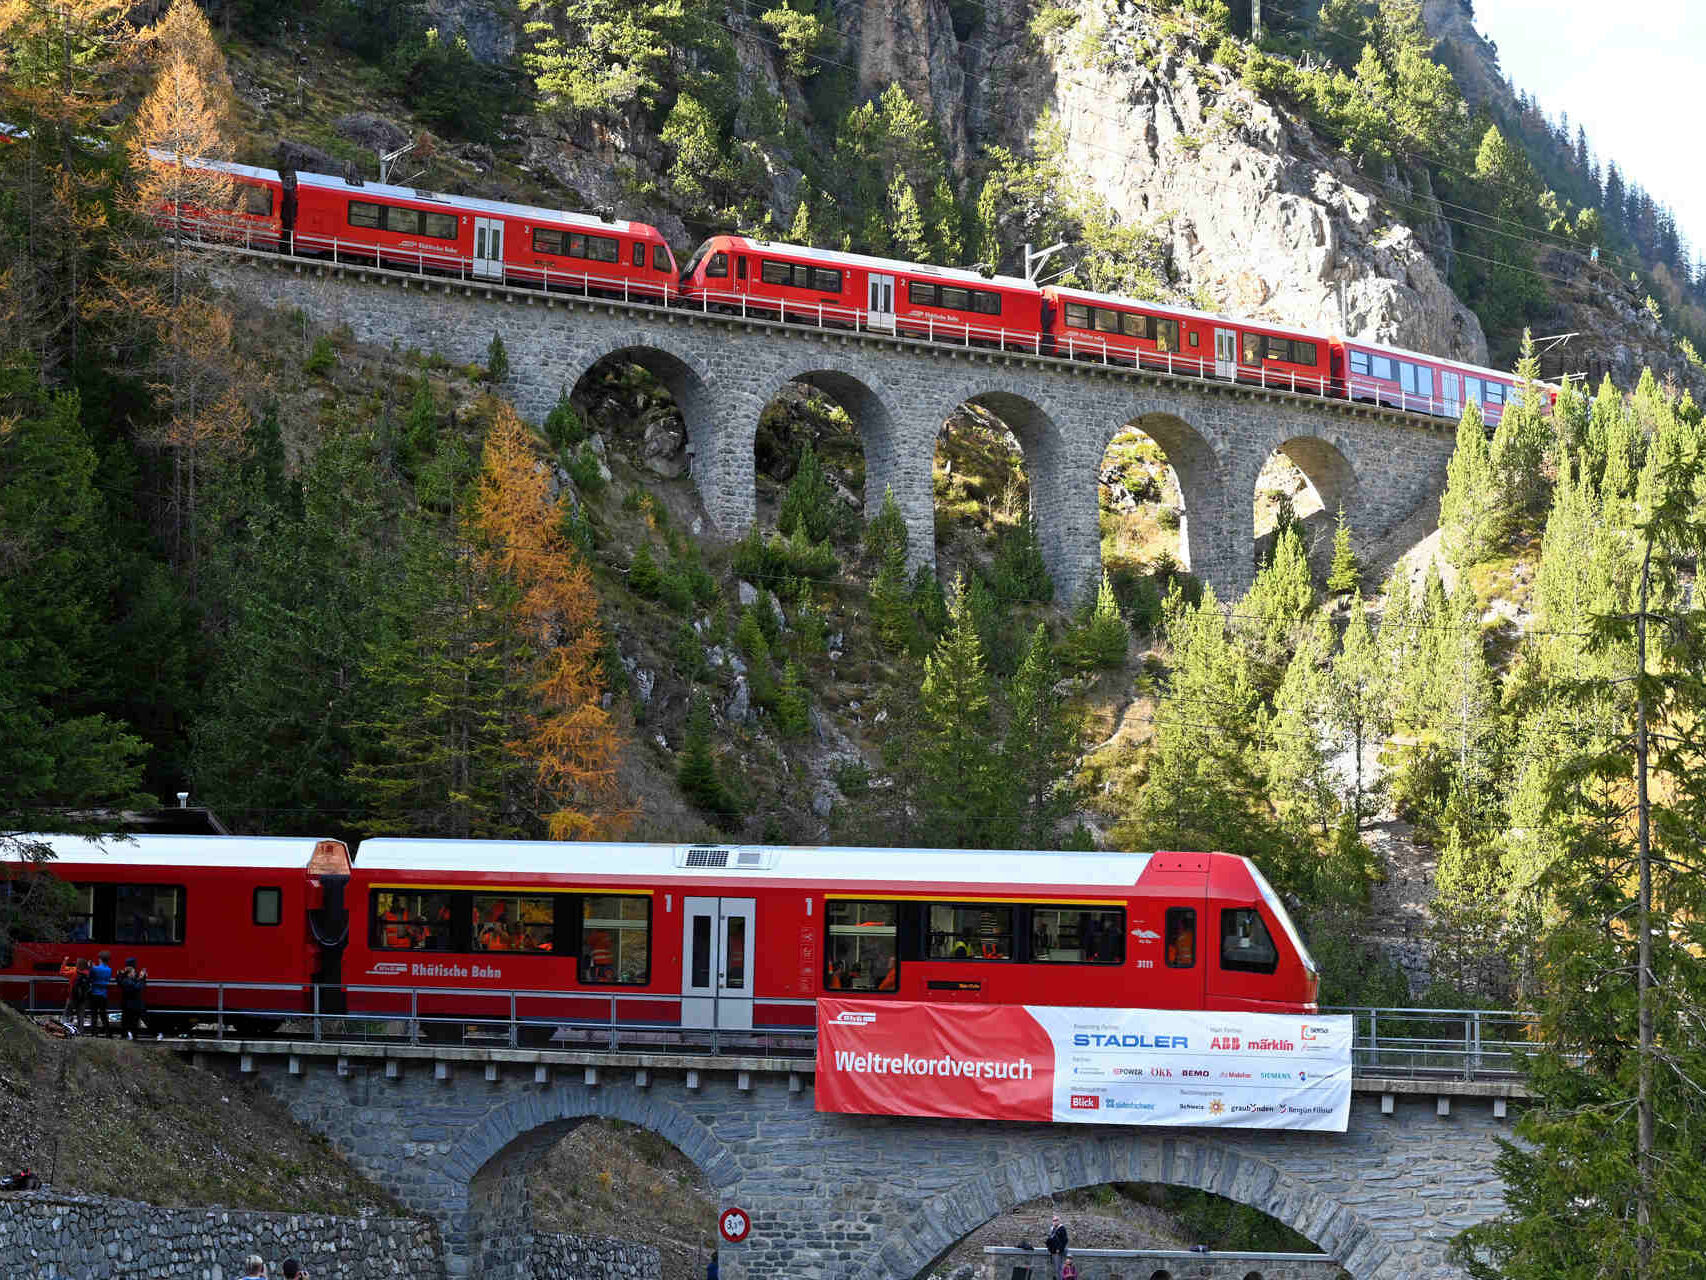 29 年 2022 月 XNUMX 日にスイスのレーティッシュ鉄道のアルブラ線で走る世界最長の狭軌列車 (写真: Andy Mettler/Swiss-Image)